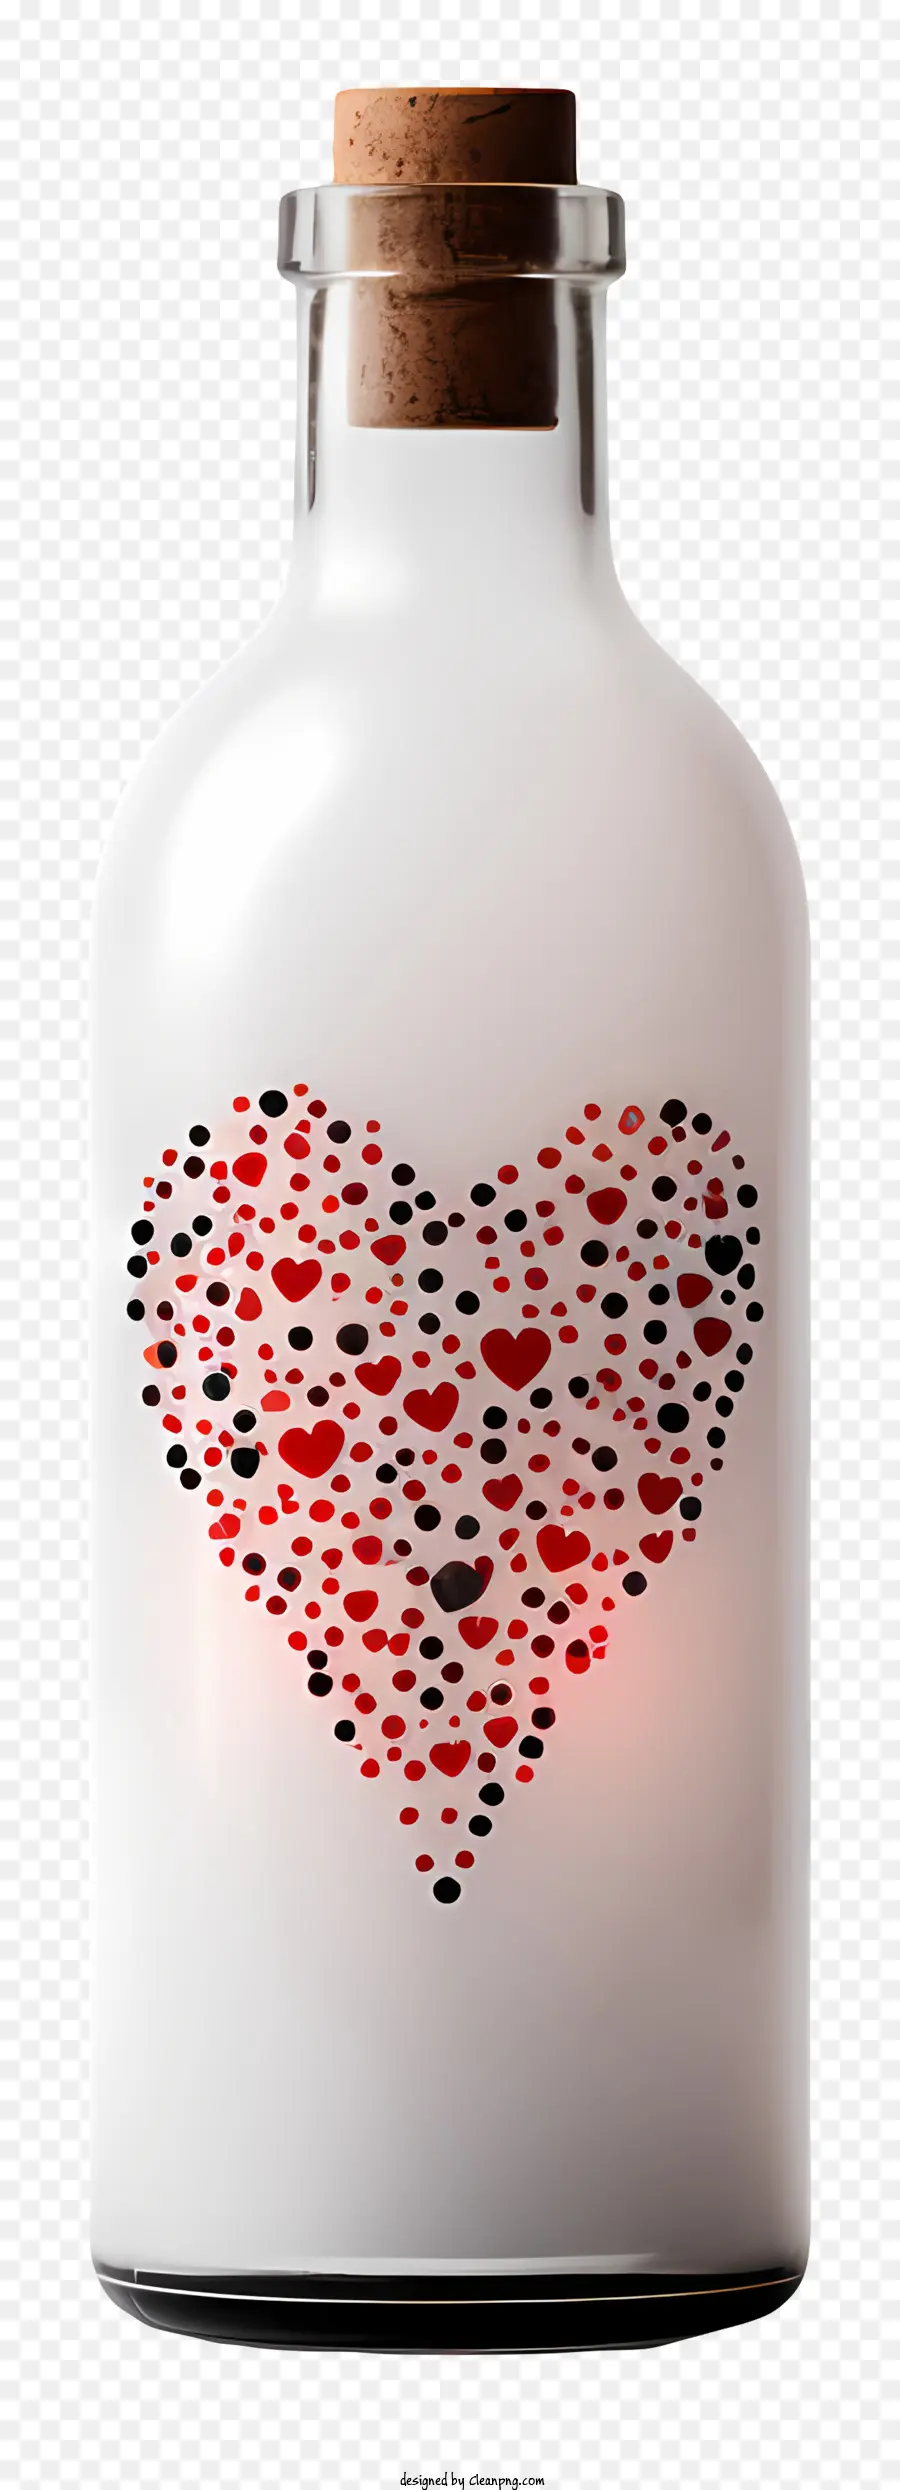 Herz Muster - Herzdesign auf einer Flasche mit Korkoberteil